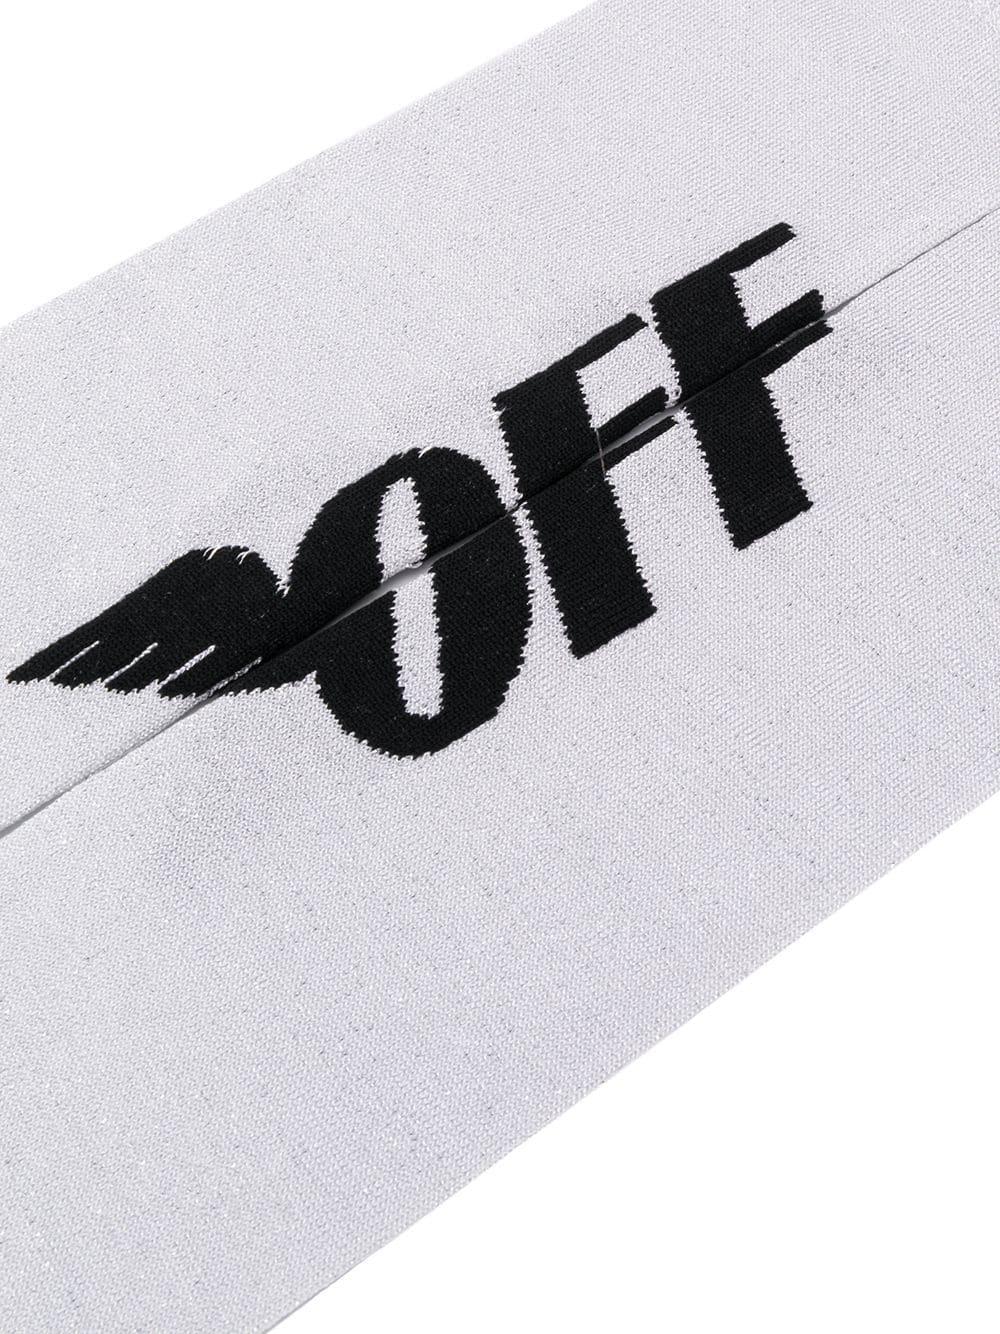 Off White Virgil Abloh Logo - Off-White C/O Virgil Abloh Logo Socks in Gray - Lyst